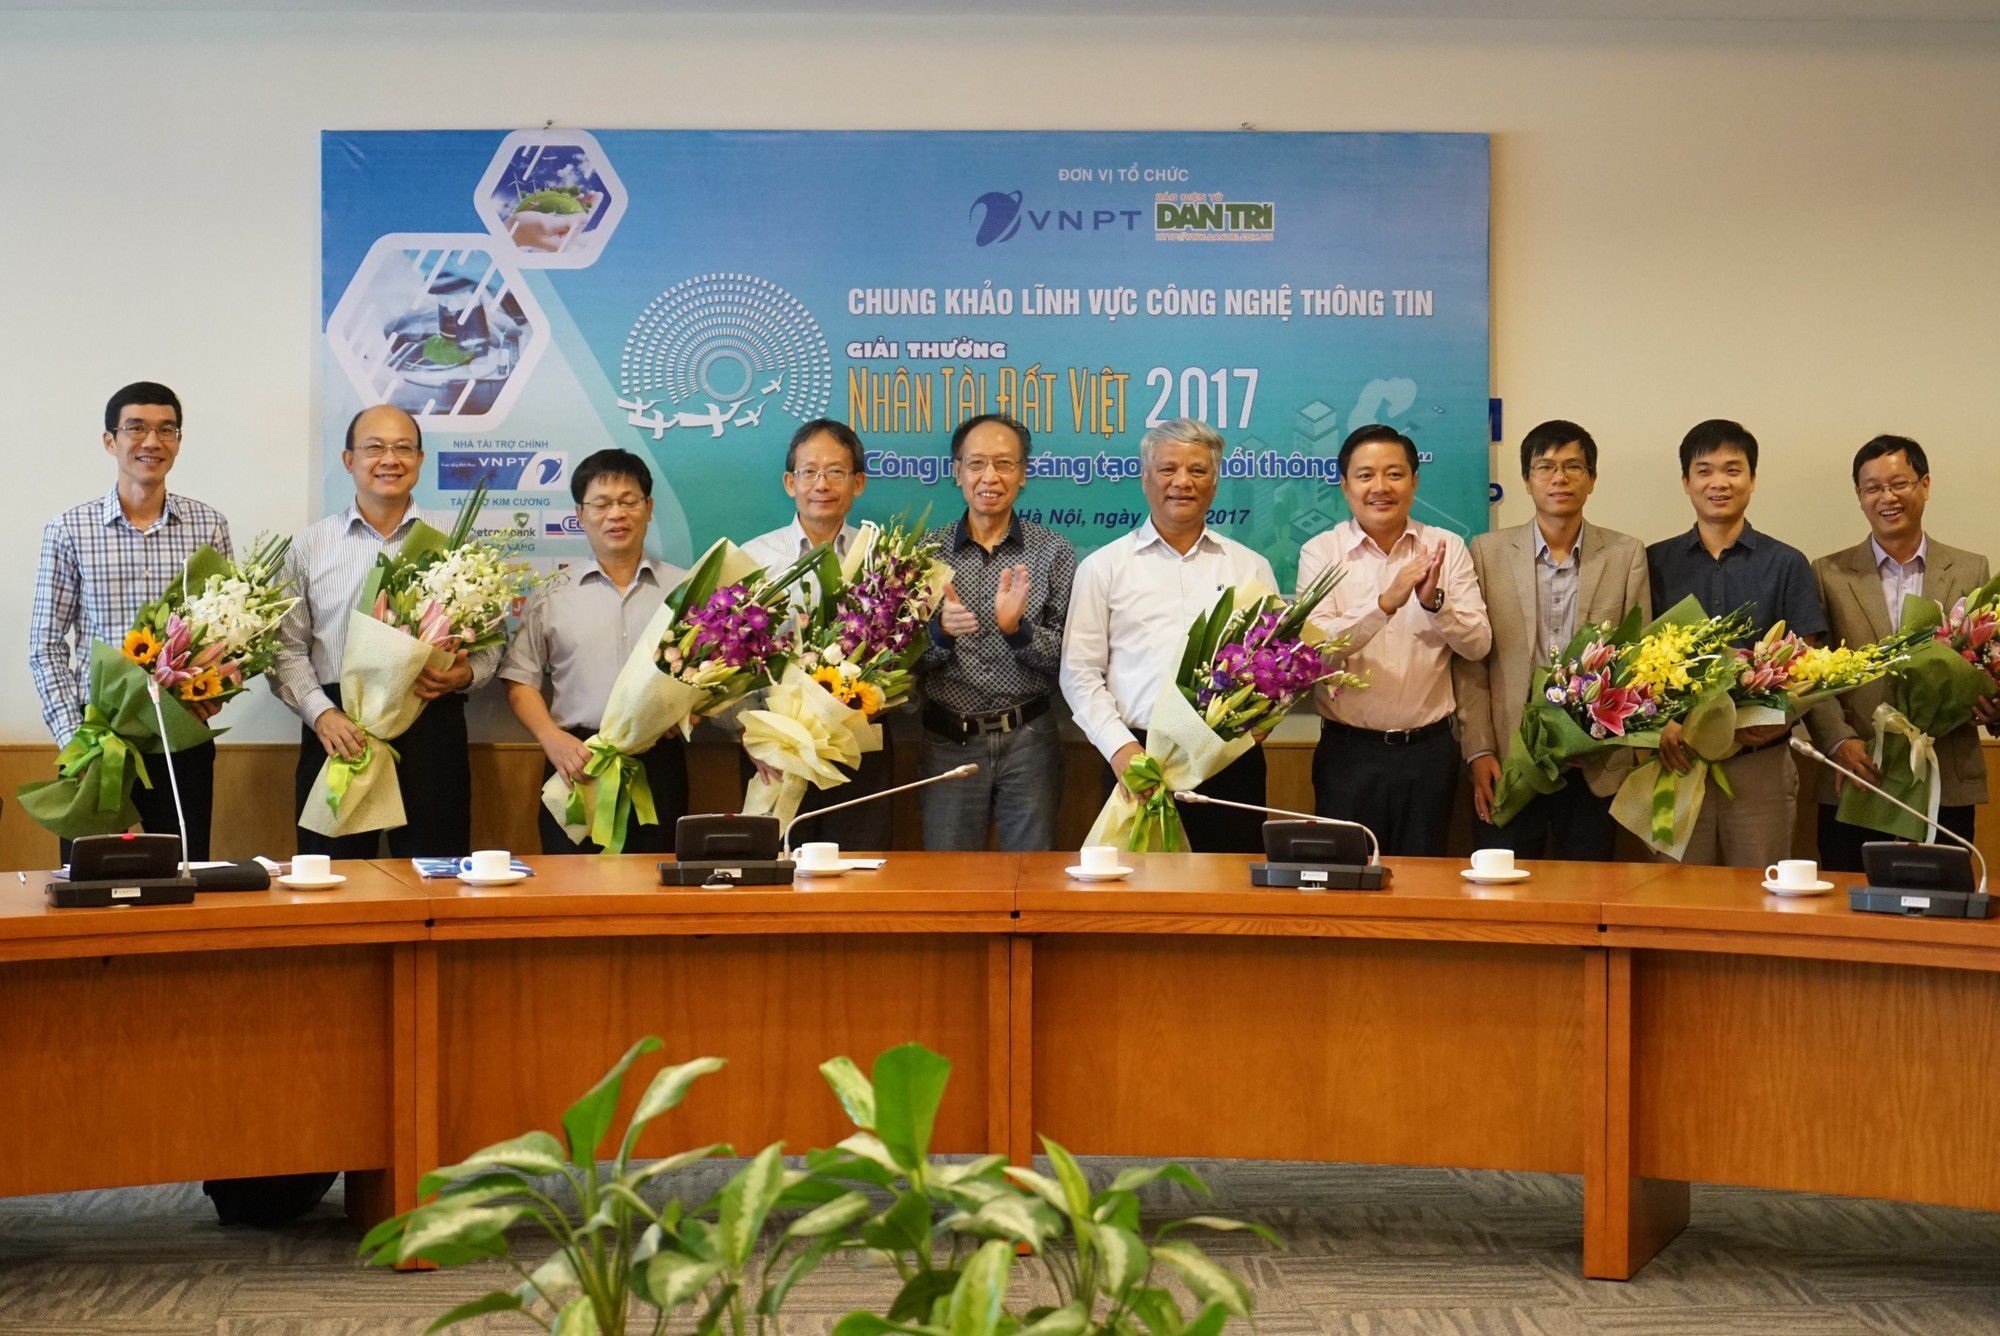 
BTC Giải thưởng Nhân tài Đất Việt 2017 gửi những lẵng hoa tươi thắm để tri ân các nhà giáo trong hội đồng chấm Chung khảo.
